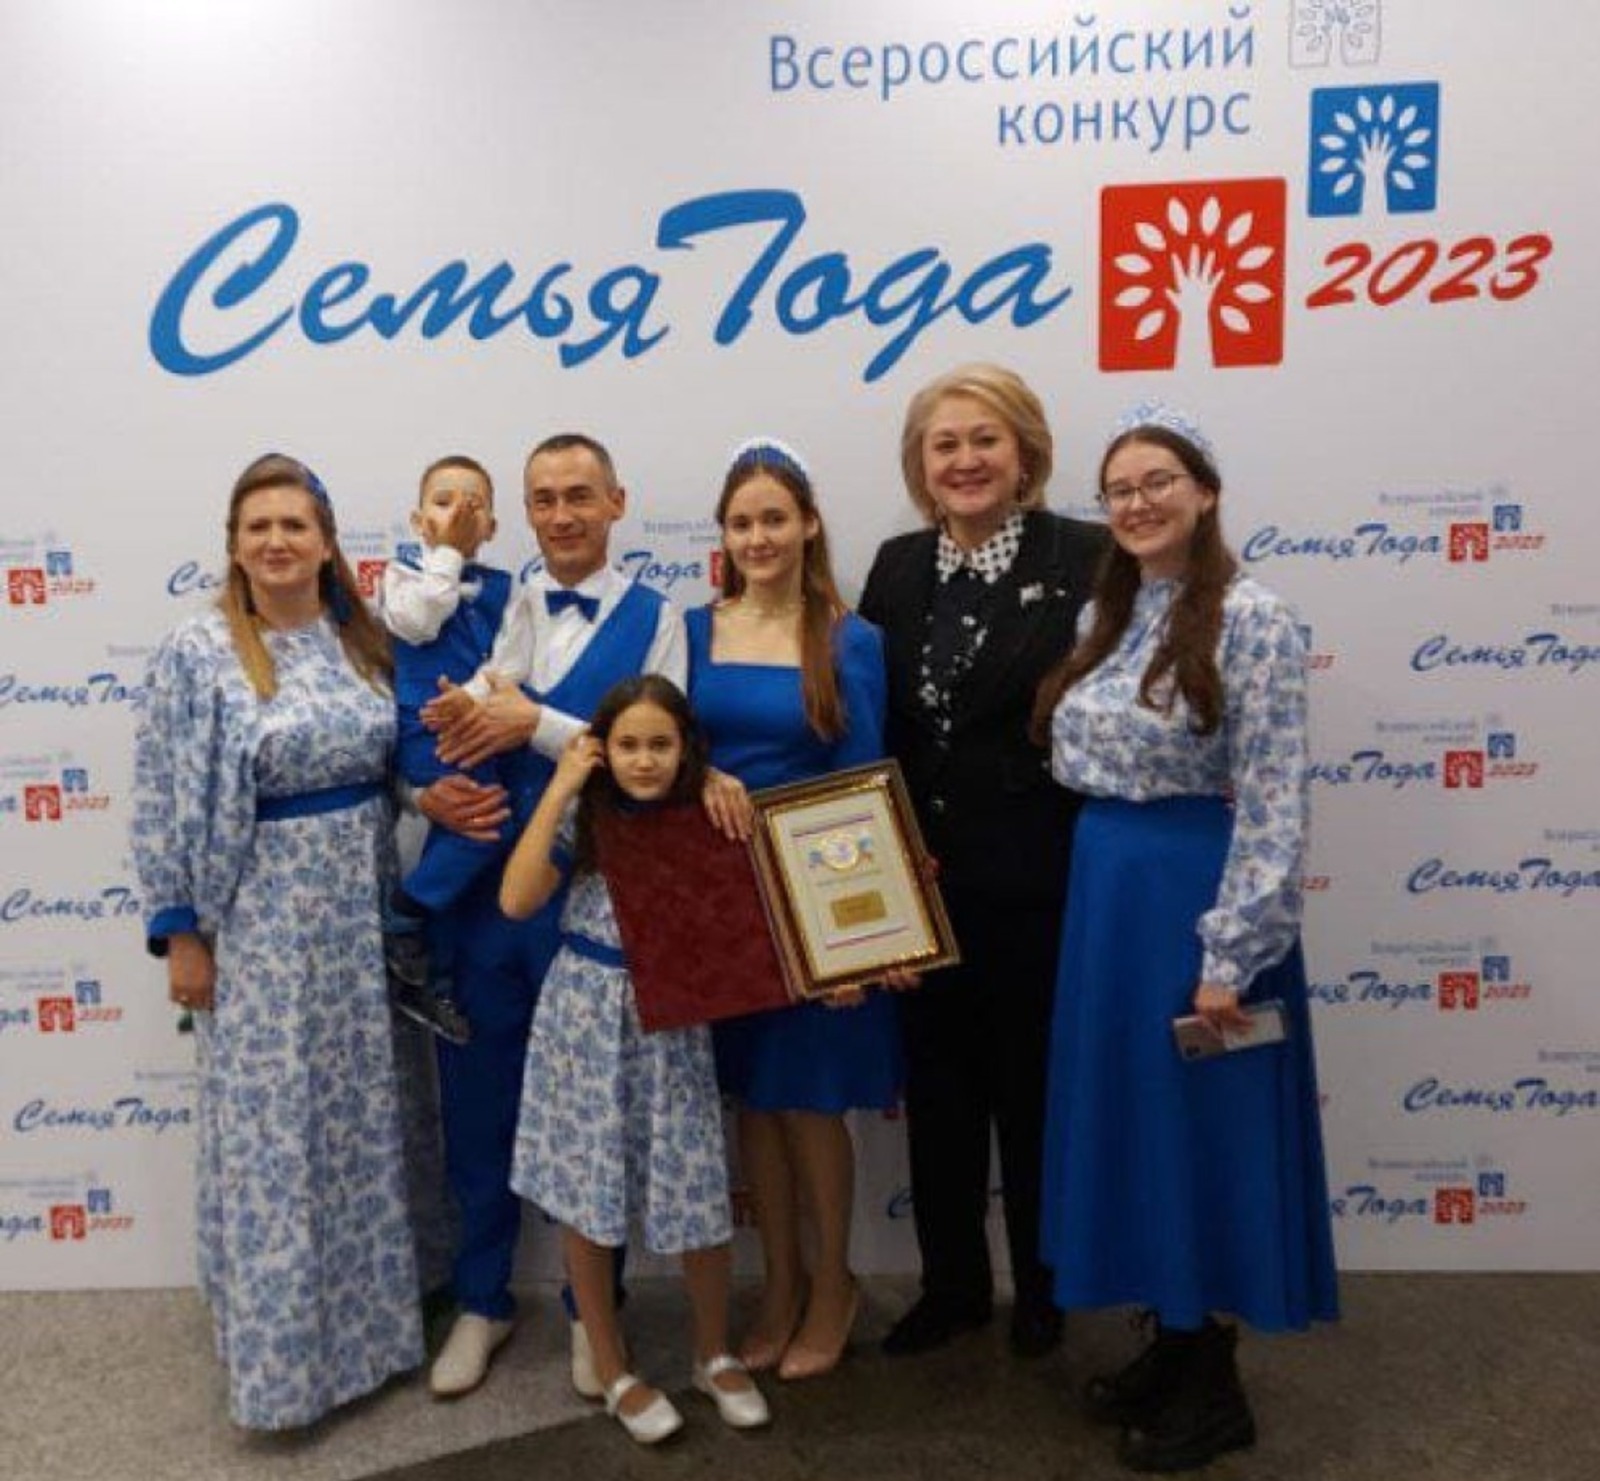 Стерлитамакскую  семью  Ахмеровых  из Башкирии признали одной из победительниц  во Всероссийского конкурсе «Семья года»